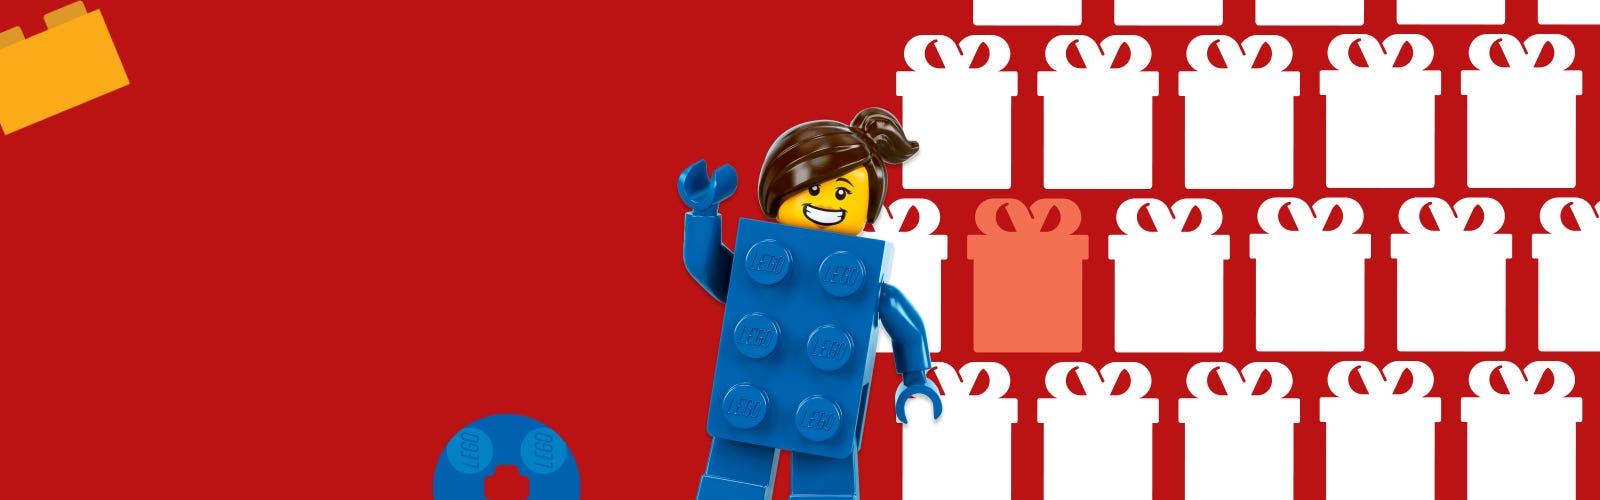 Comment organiser une fête d'anniversaire sur le thème LEGO